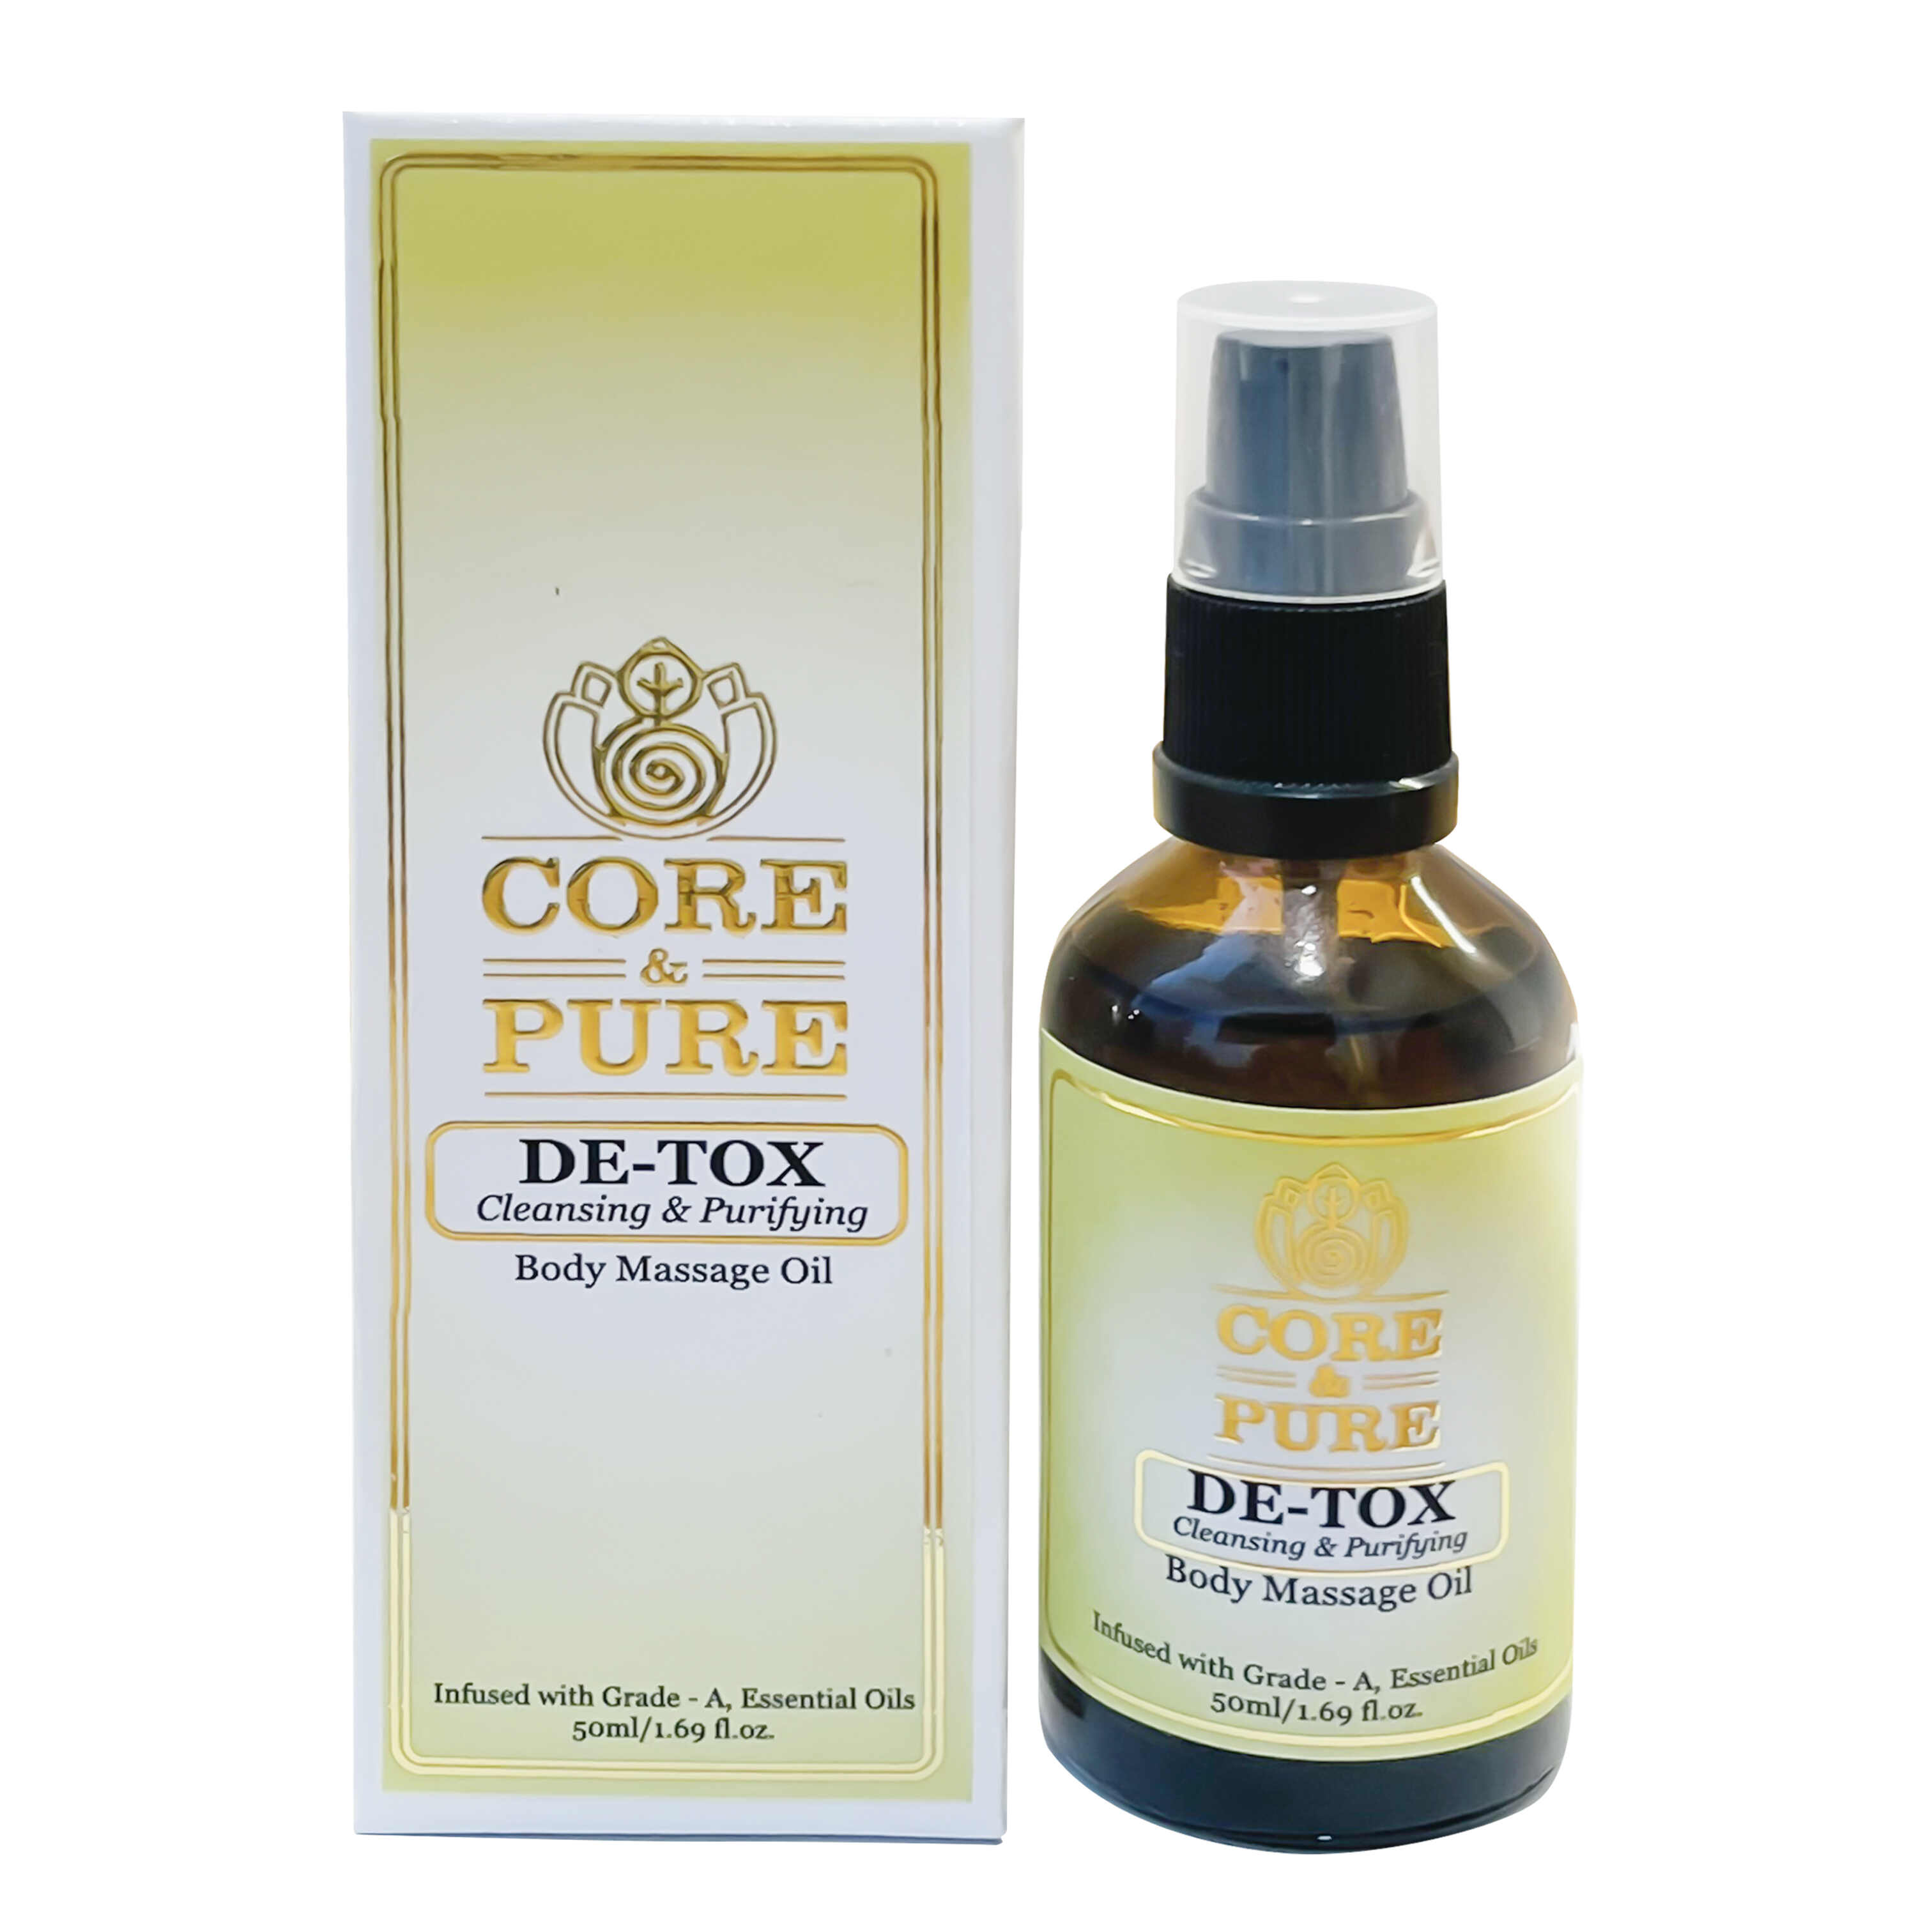 DE-TOX Body Massage Oil